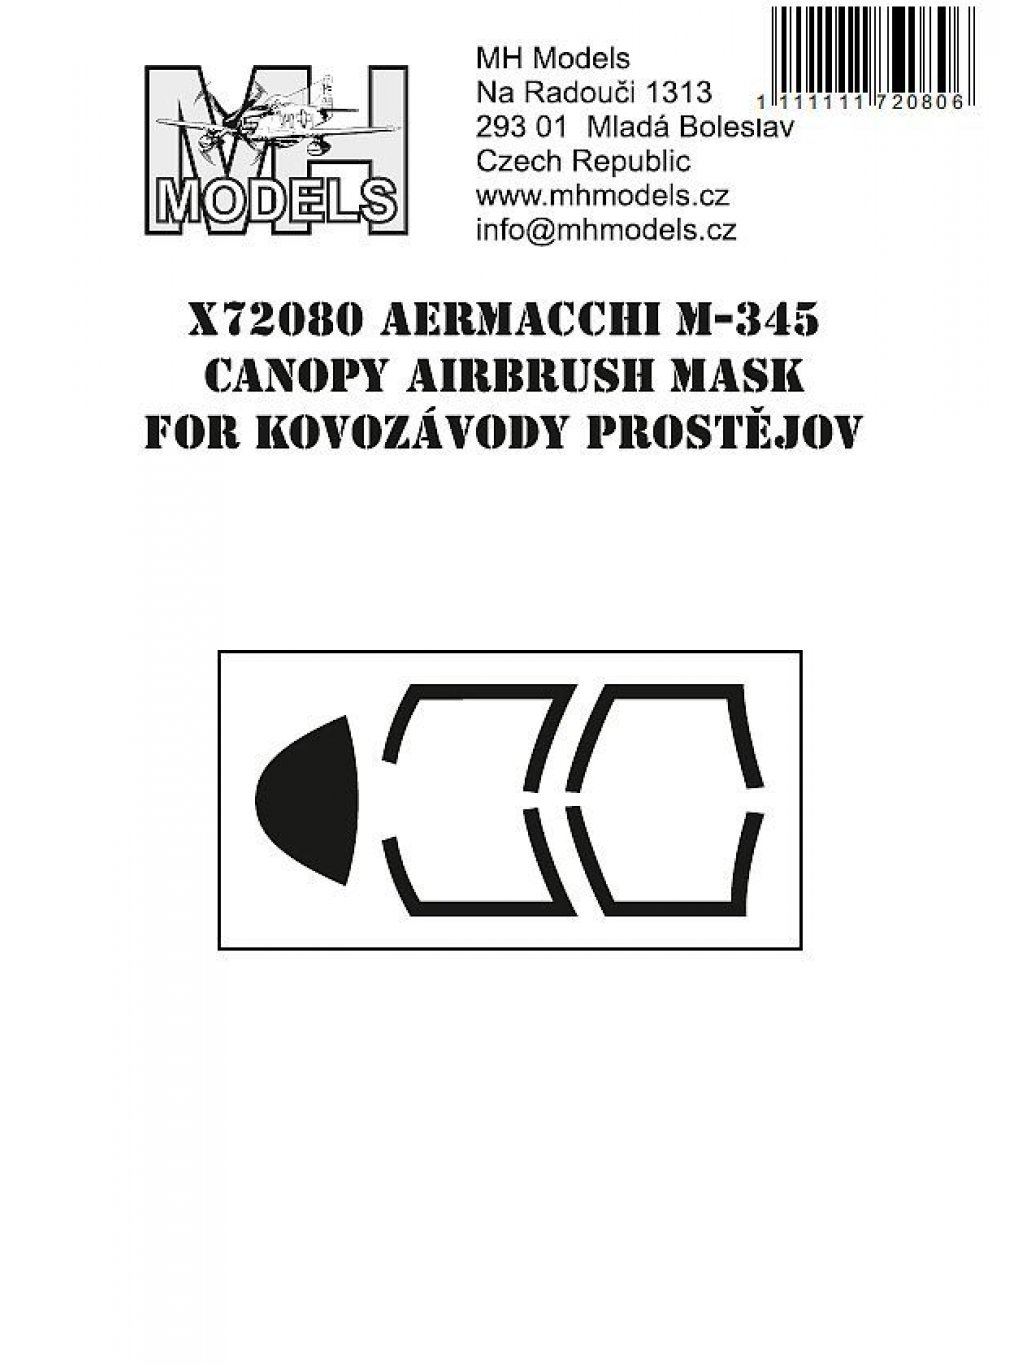 Aermacchi M-345 canopy airbrush mask for Kovozávody Prostějov